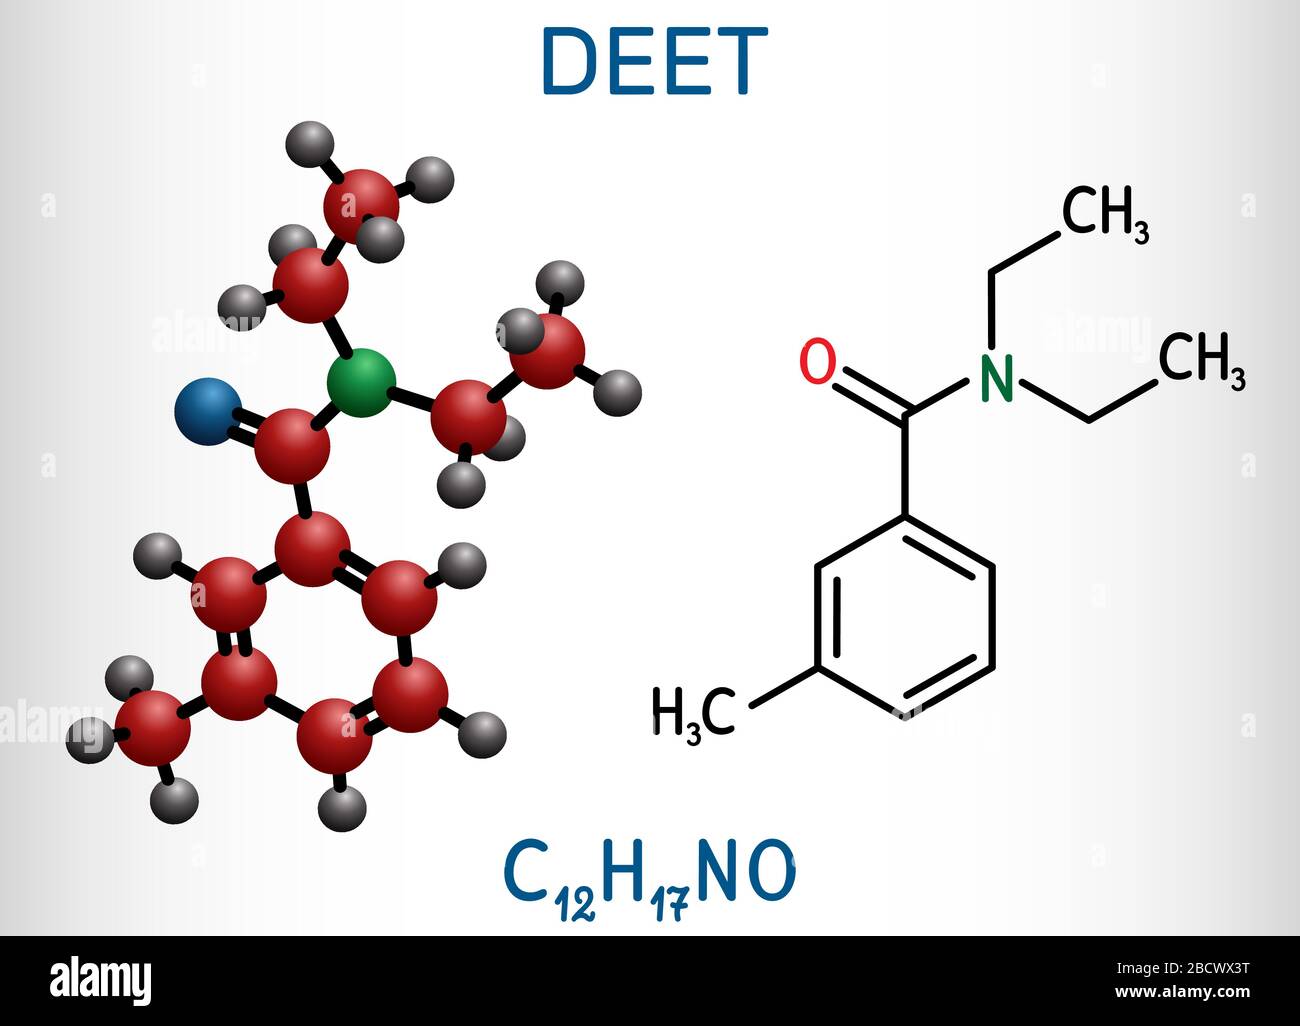 DEET, Diethyltoluamid, N,N-Diethyl-Meta-Toluamid C12H17NO-Molekül. Es ist Wirkstoff in Insektenschutzmitteln. Strukturelle chemische Formel und Mo Stock Vektor